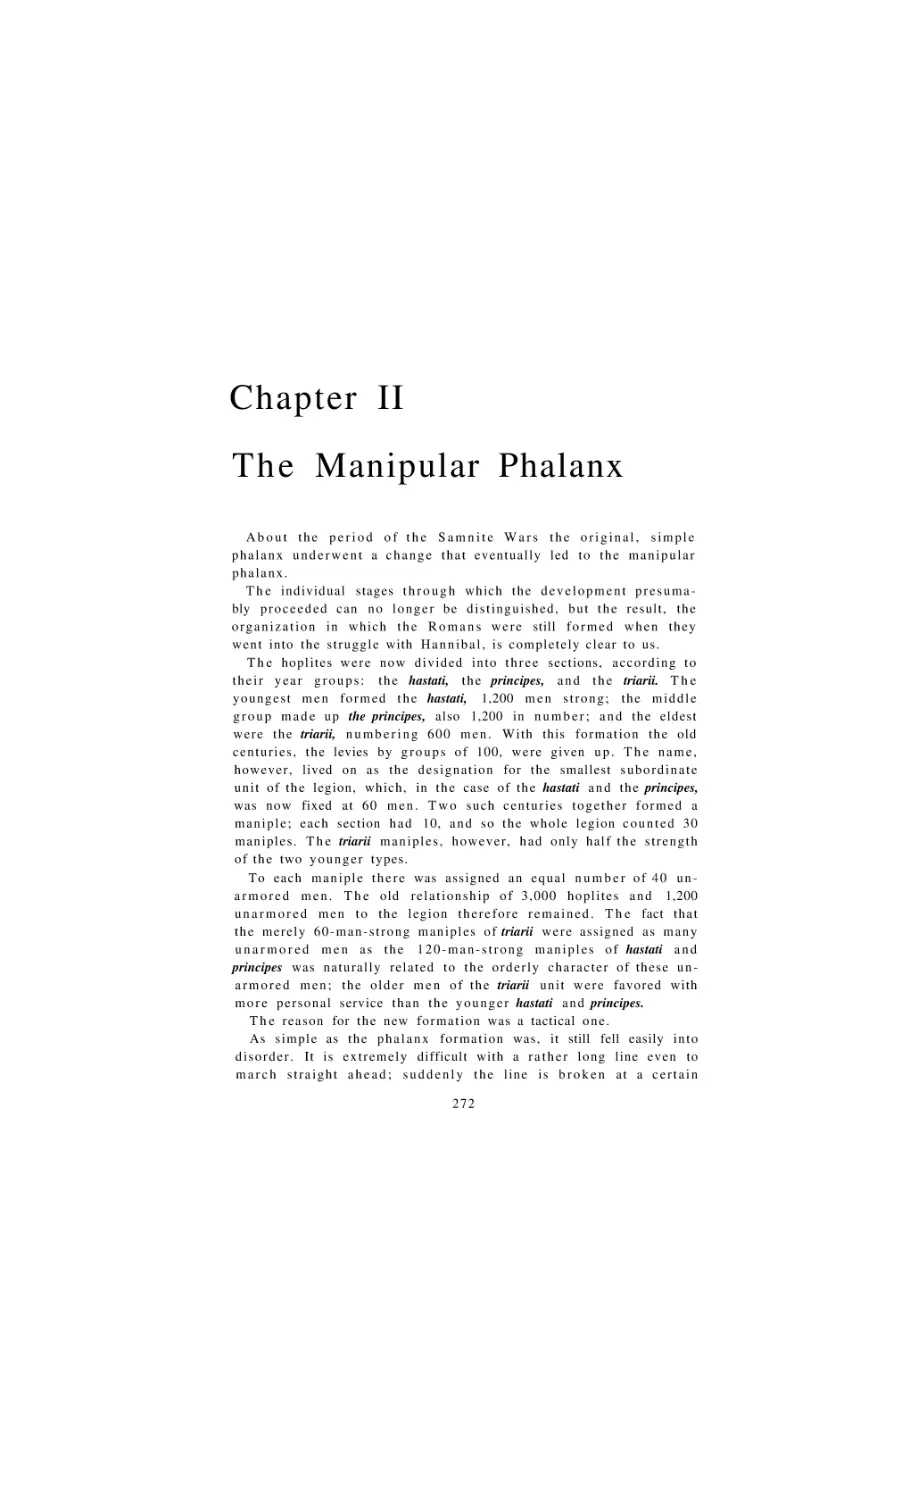 The Manipular Phalanx